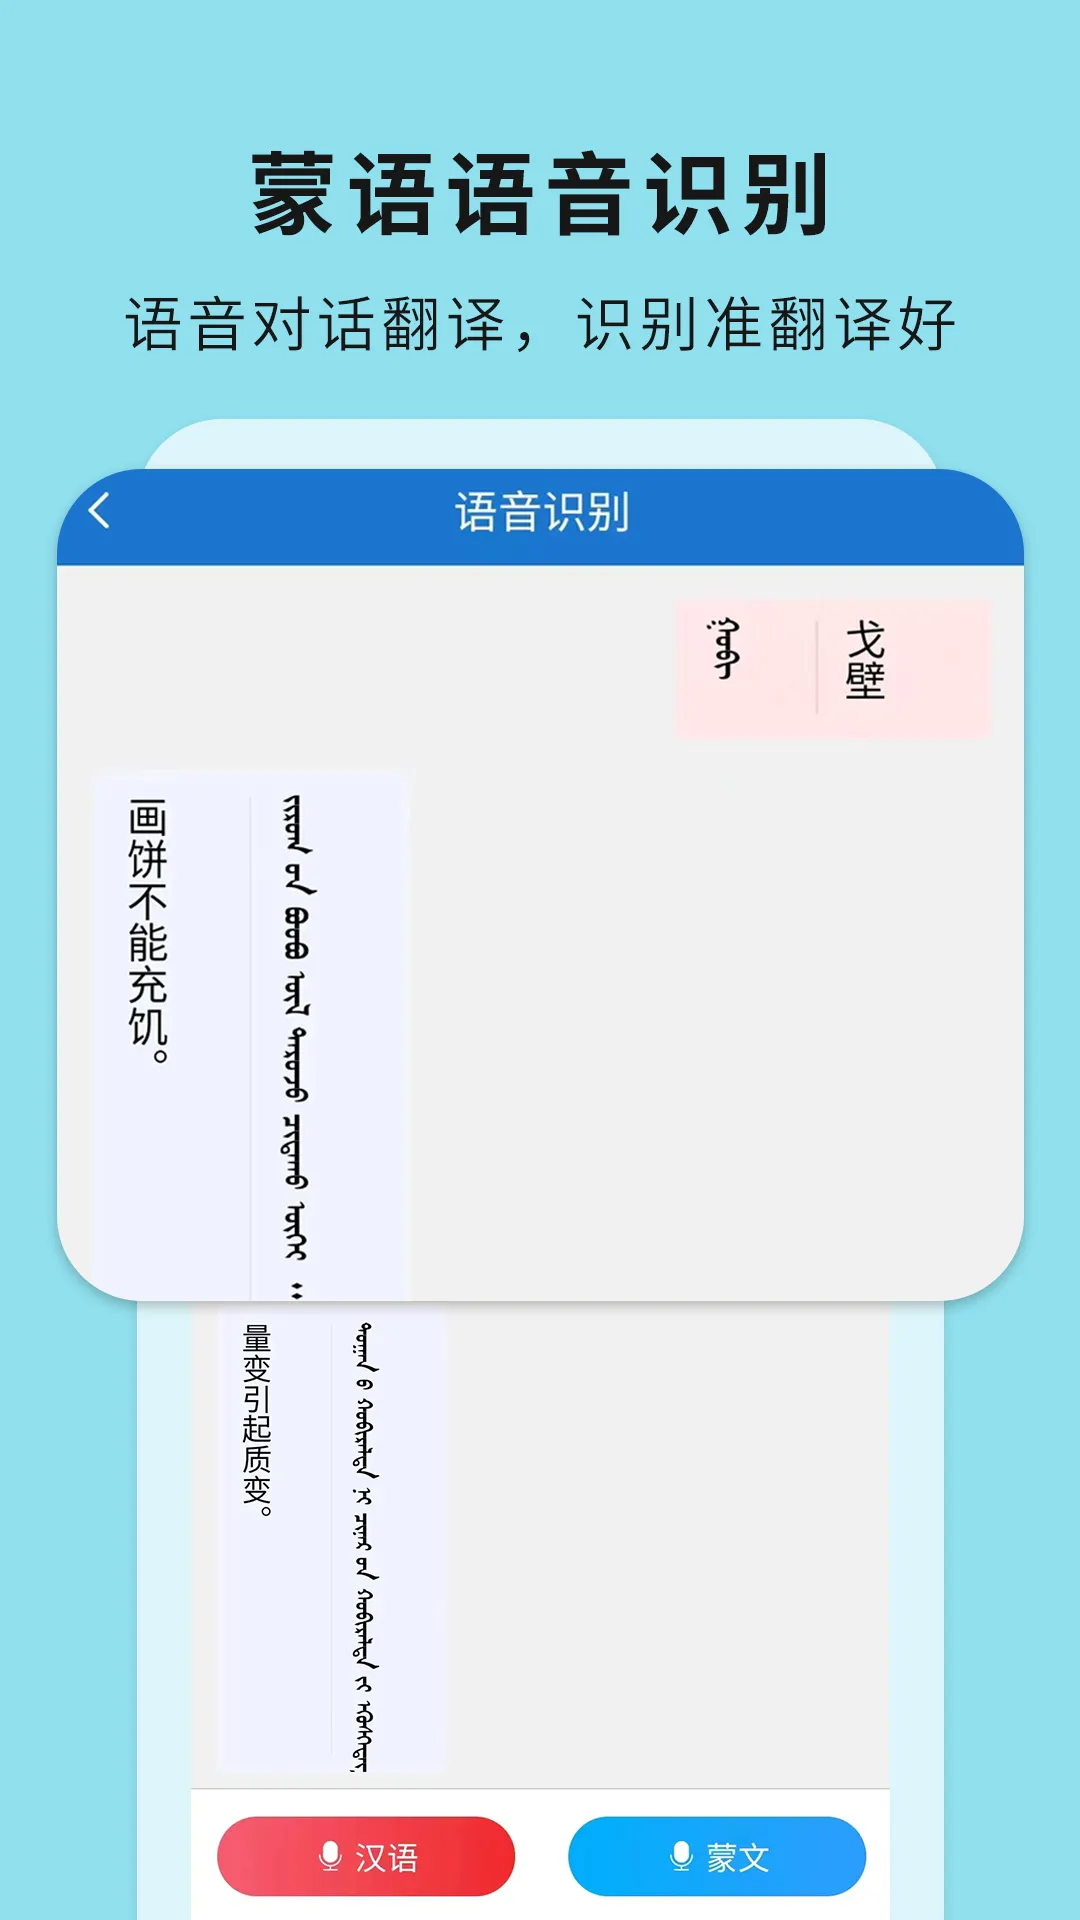 蒙汉翻译通最新版本 v3.3.2 官方安卓版 1